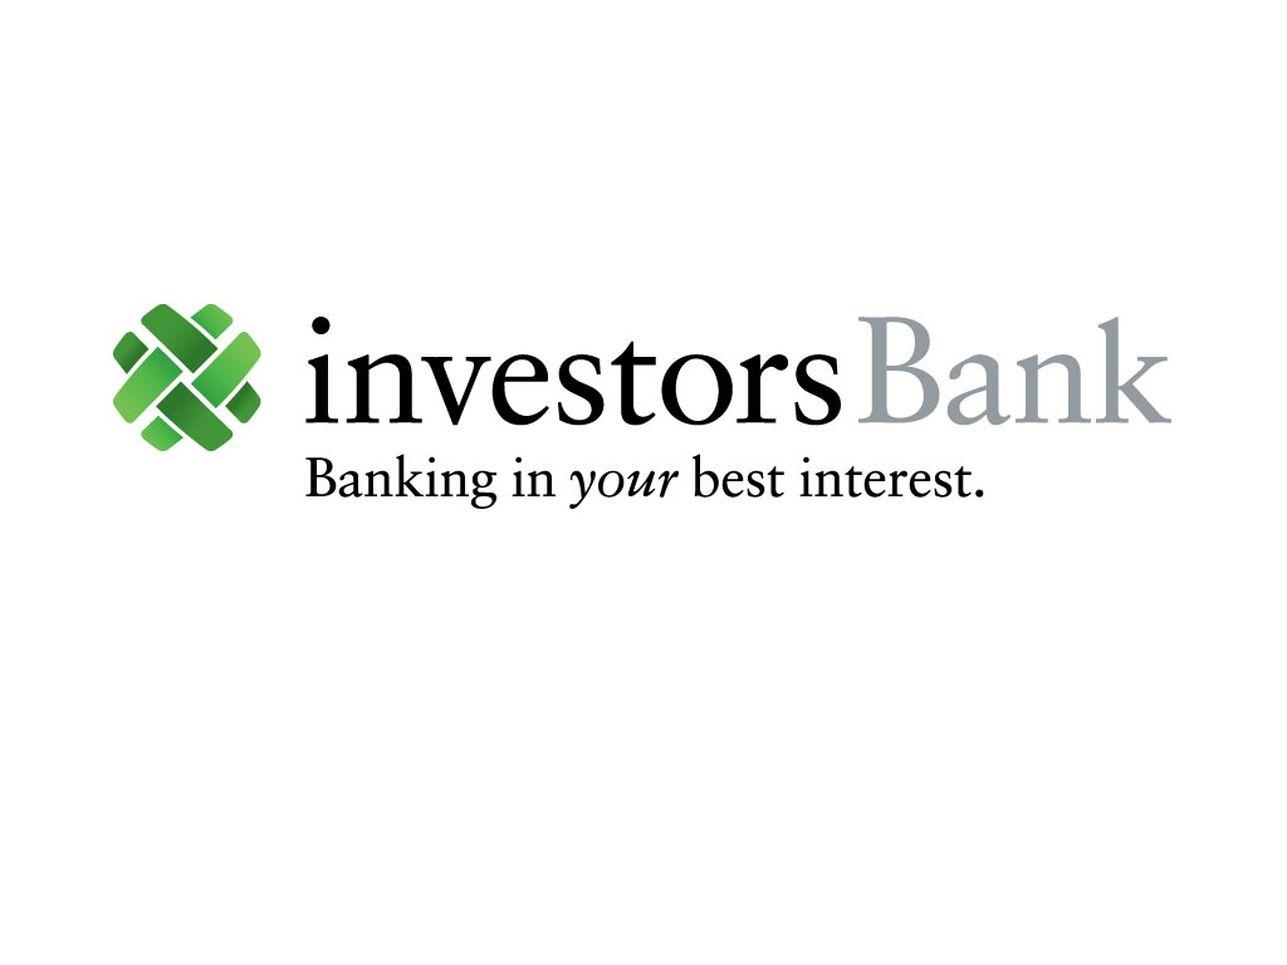 Investors Bank Logo - Investors Bank Rebranding - Graphis